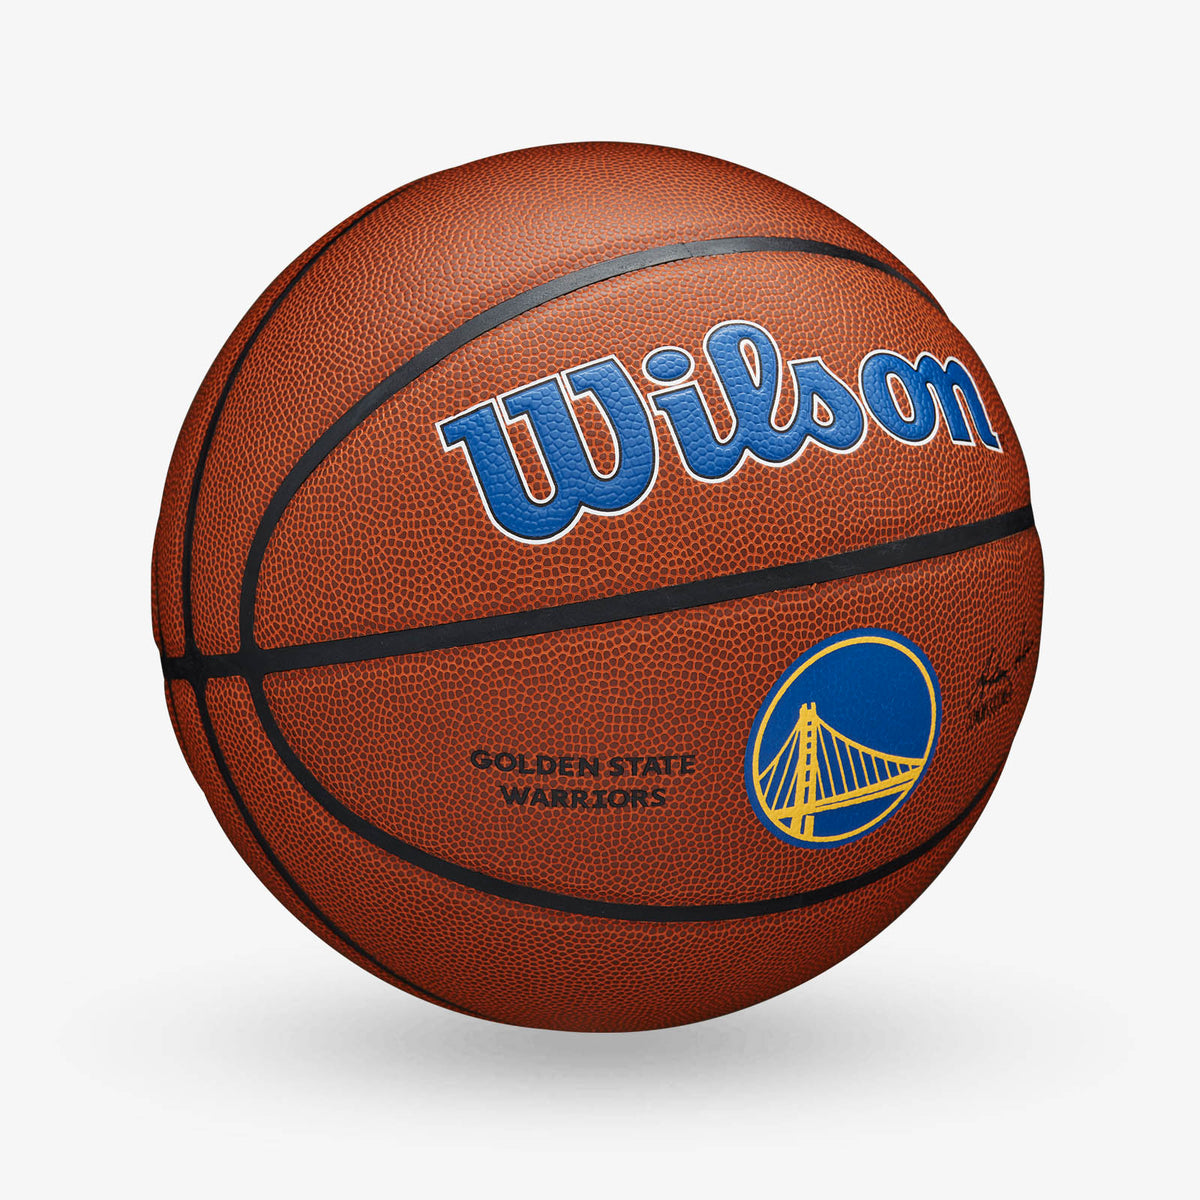 Golden State Warriors NBA Team Alliance Basketball - Size 7